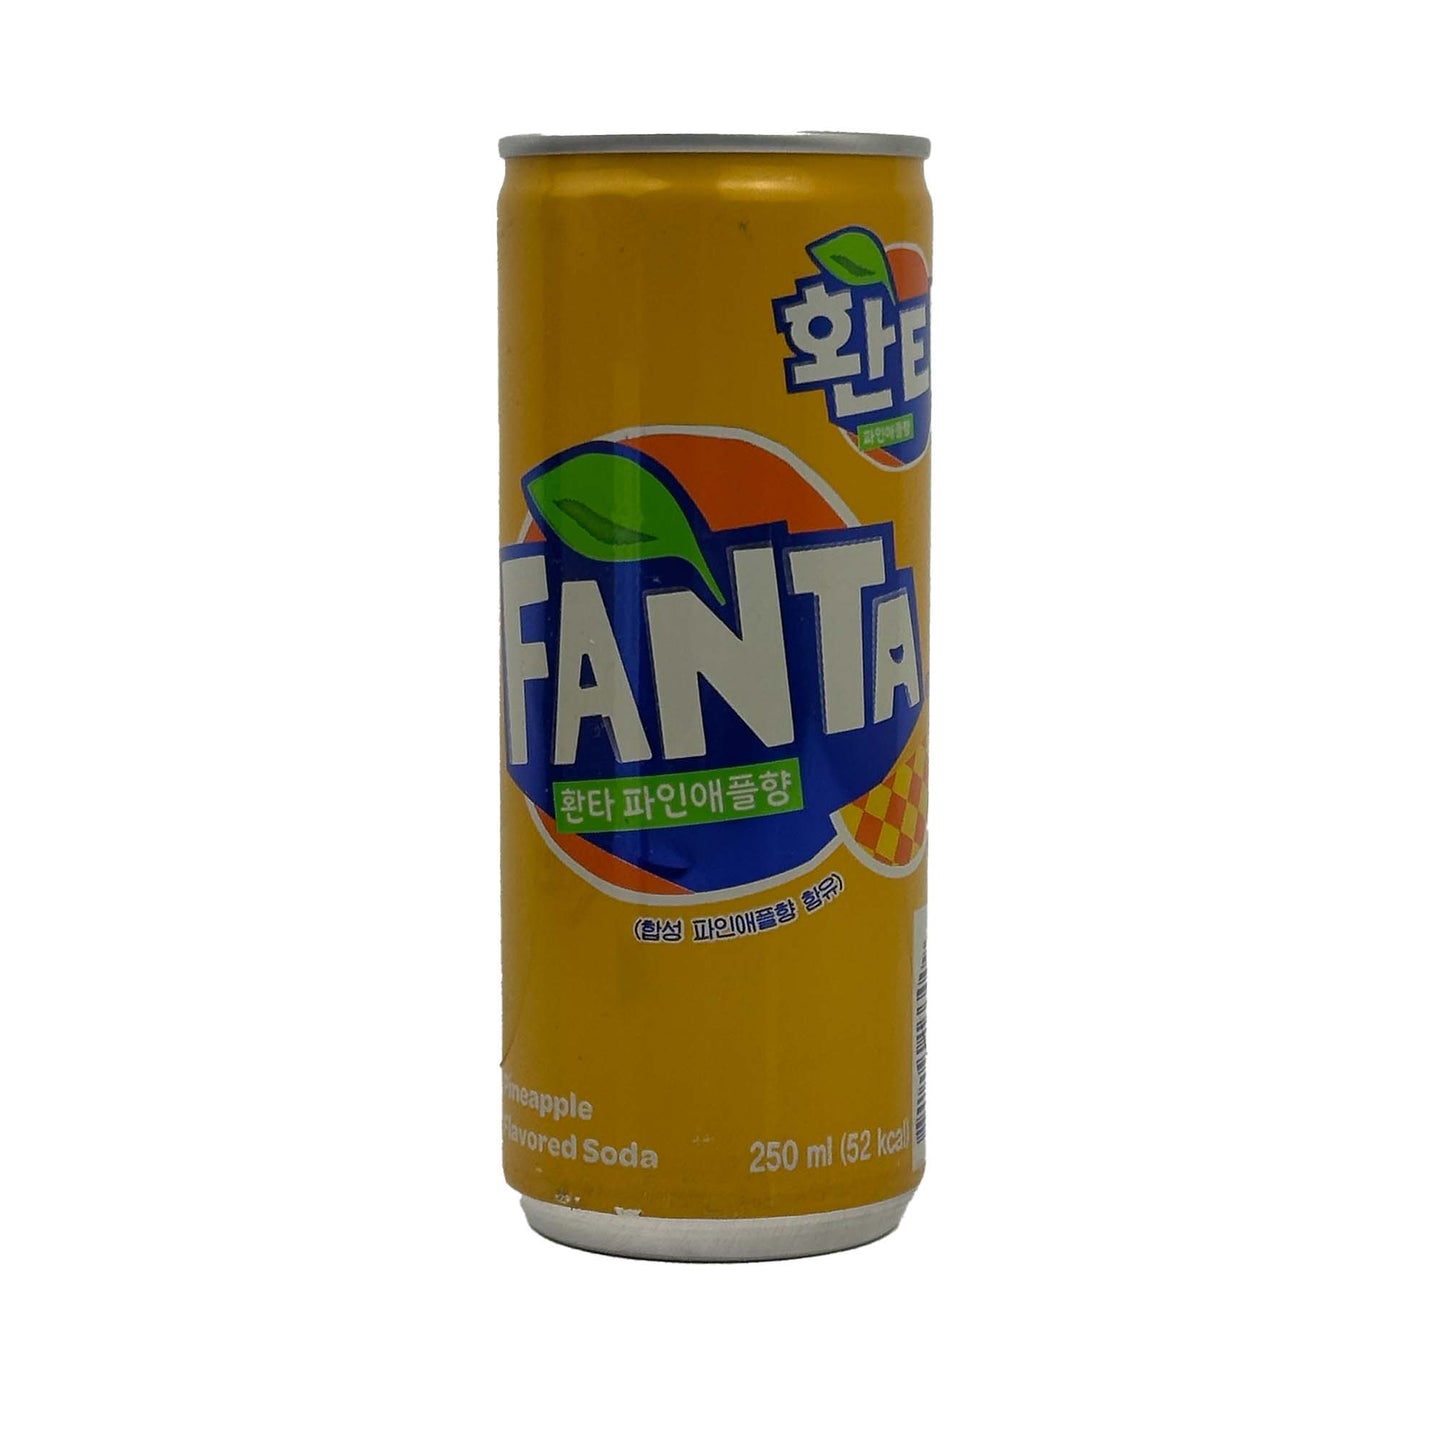 Fanta Pineapple Soda from Korea